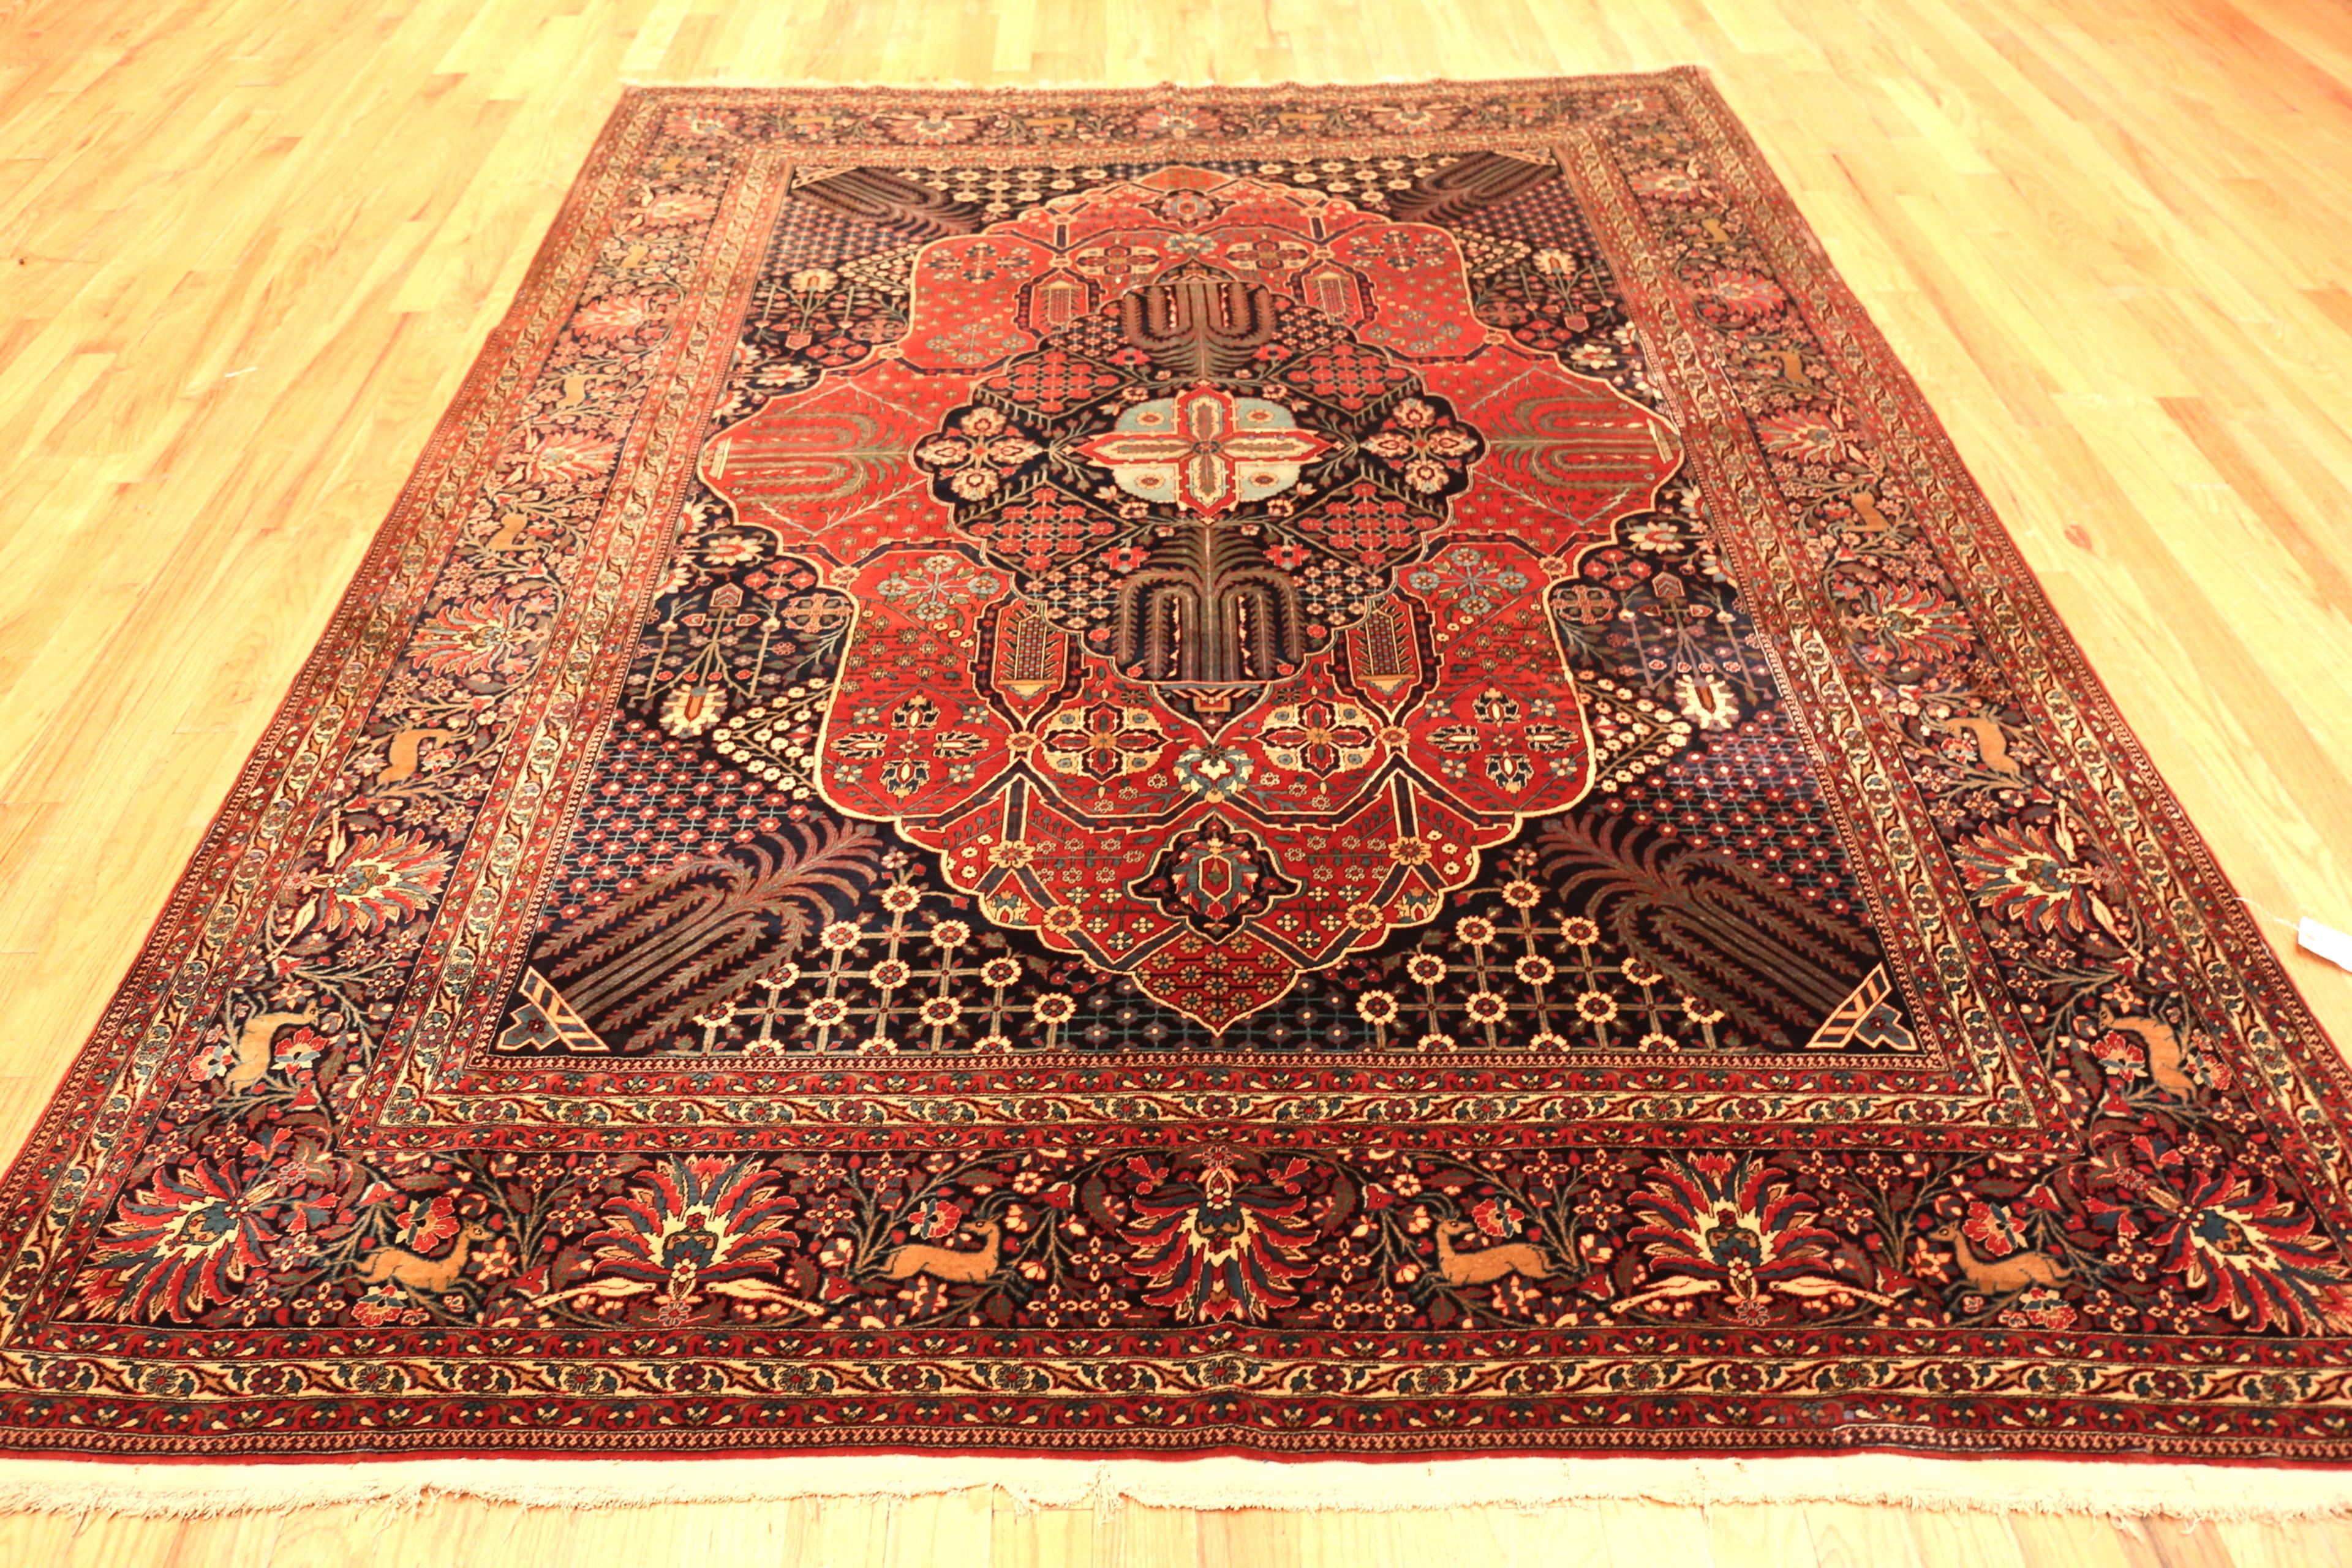 Antiker persischer Mohtasham Kashan Teppich, Herkunftsland: Persien, CIRCA Datum: 1880. Größe: 7 ft 7 in x 10 ft (2,31 m x 3,05 m)

